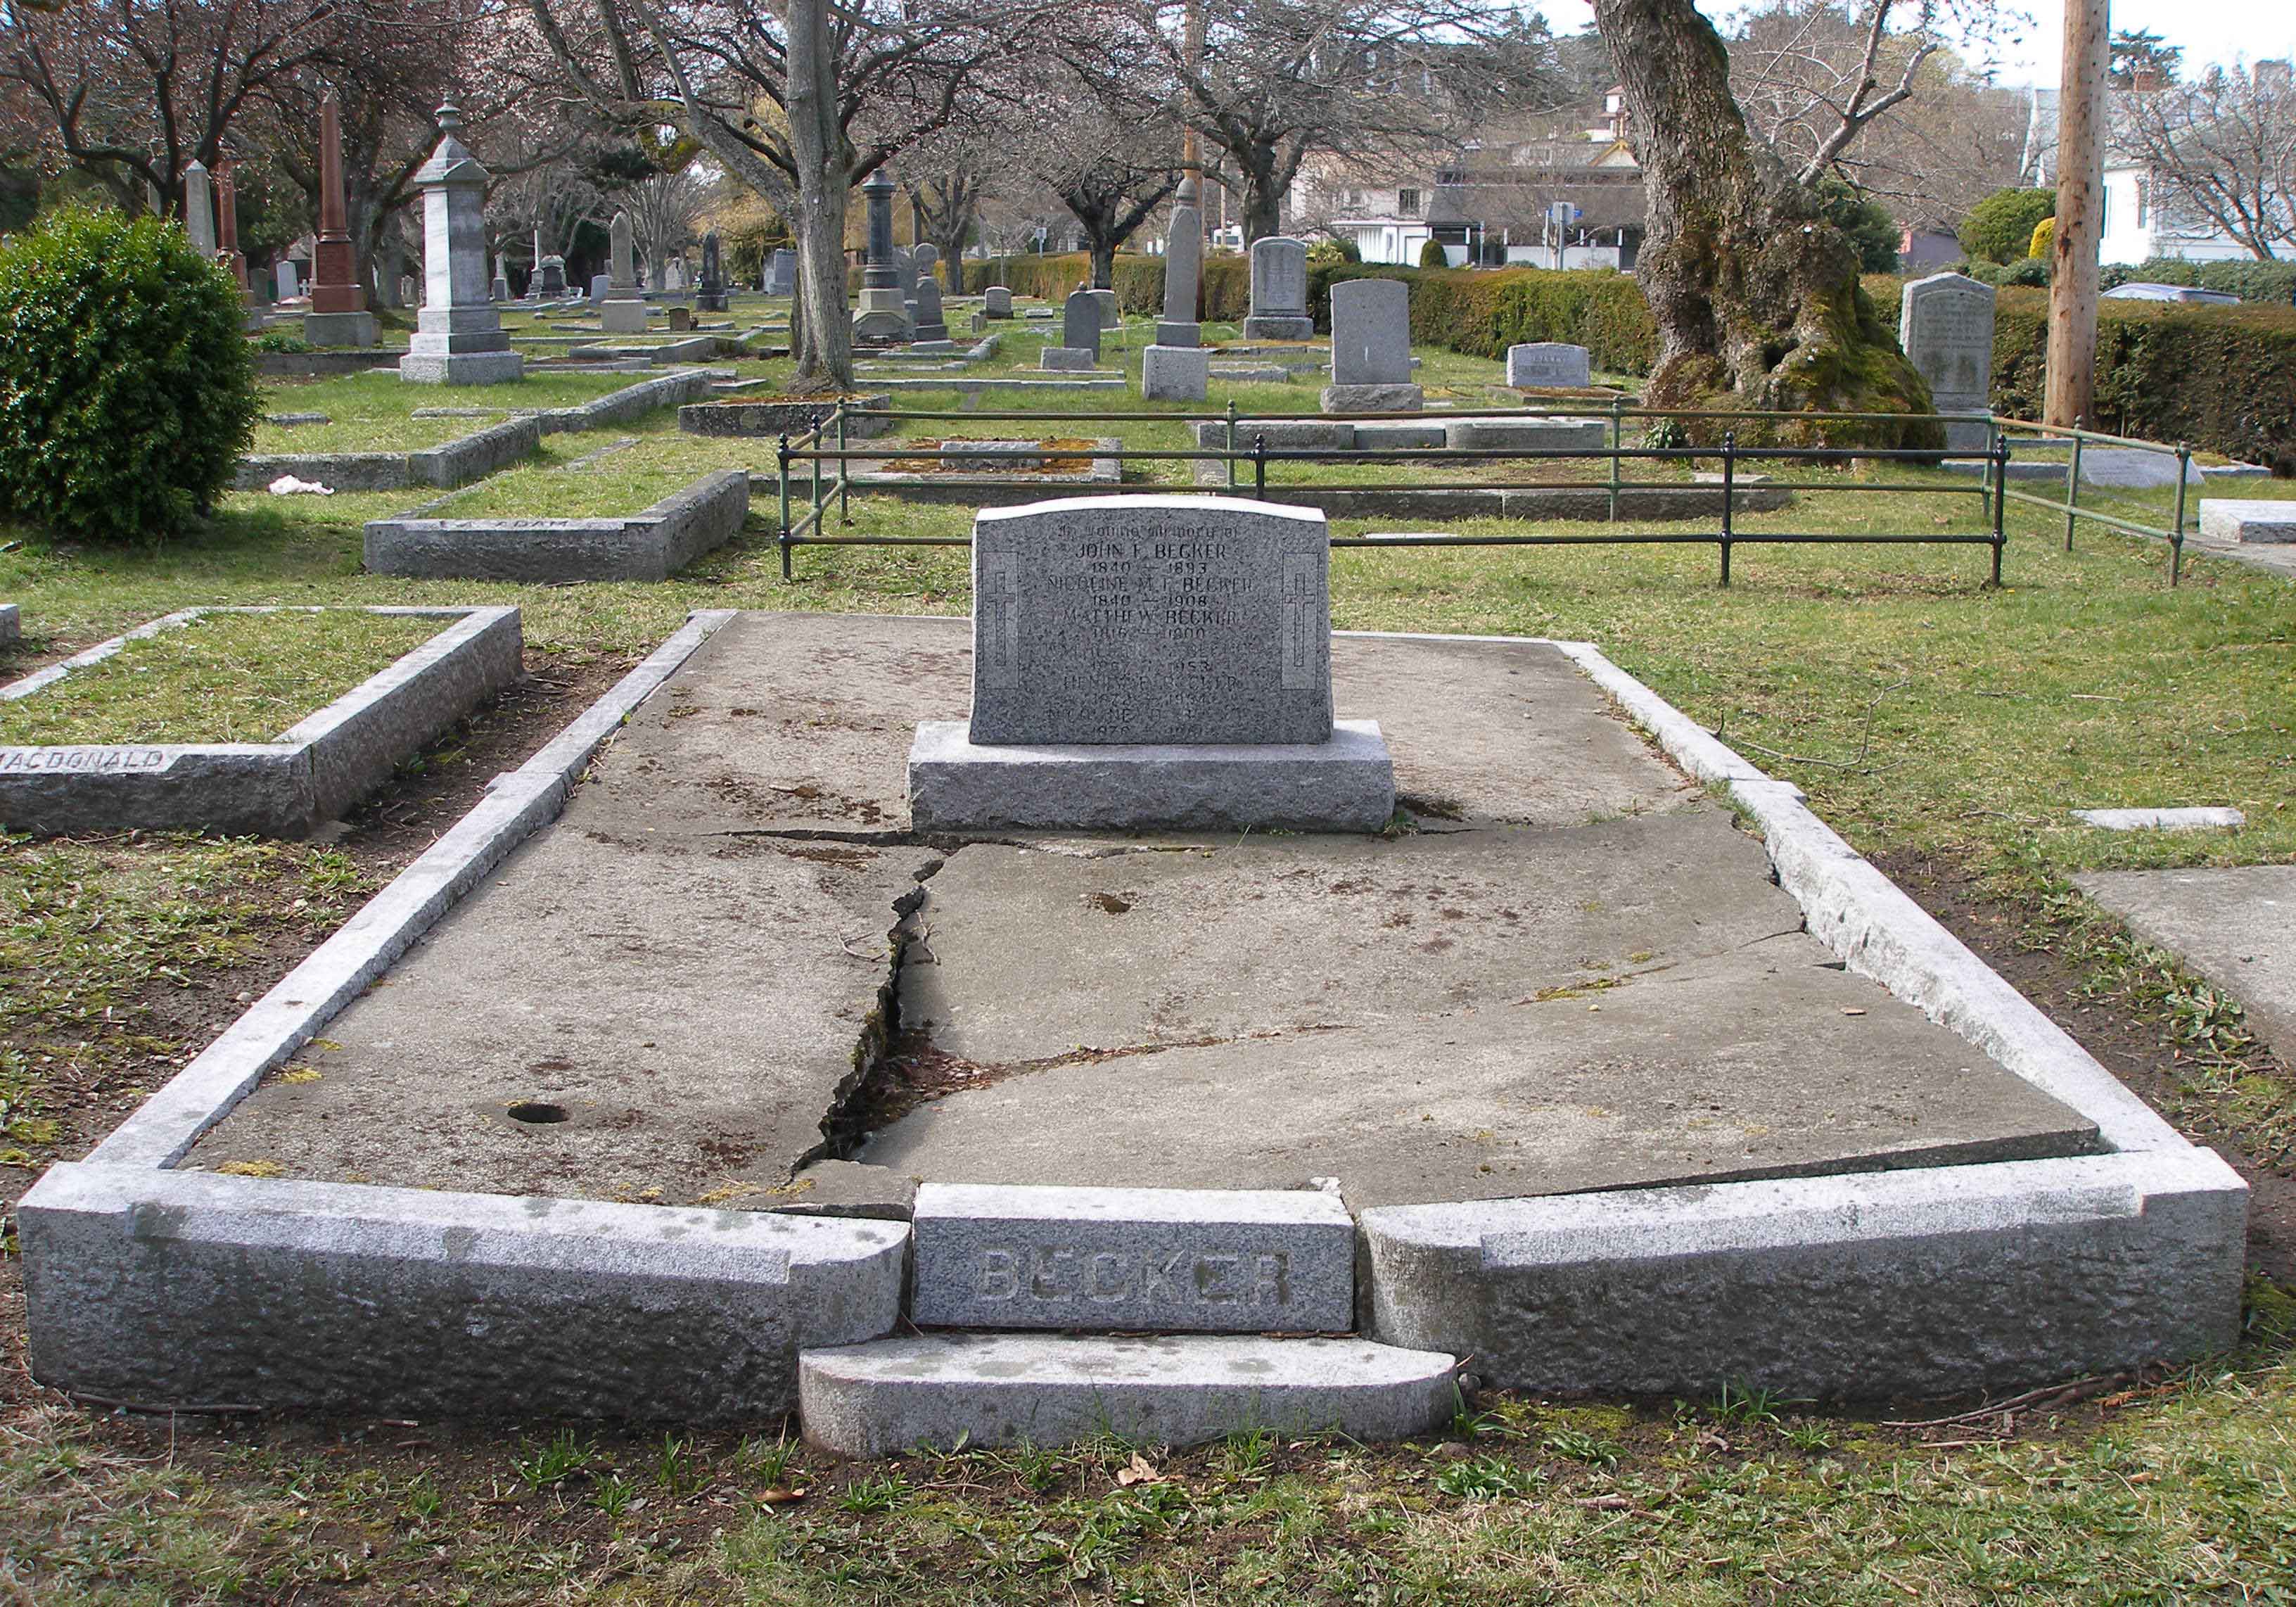 John Frederick Becker family tomb, Ross Bay Cemetery